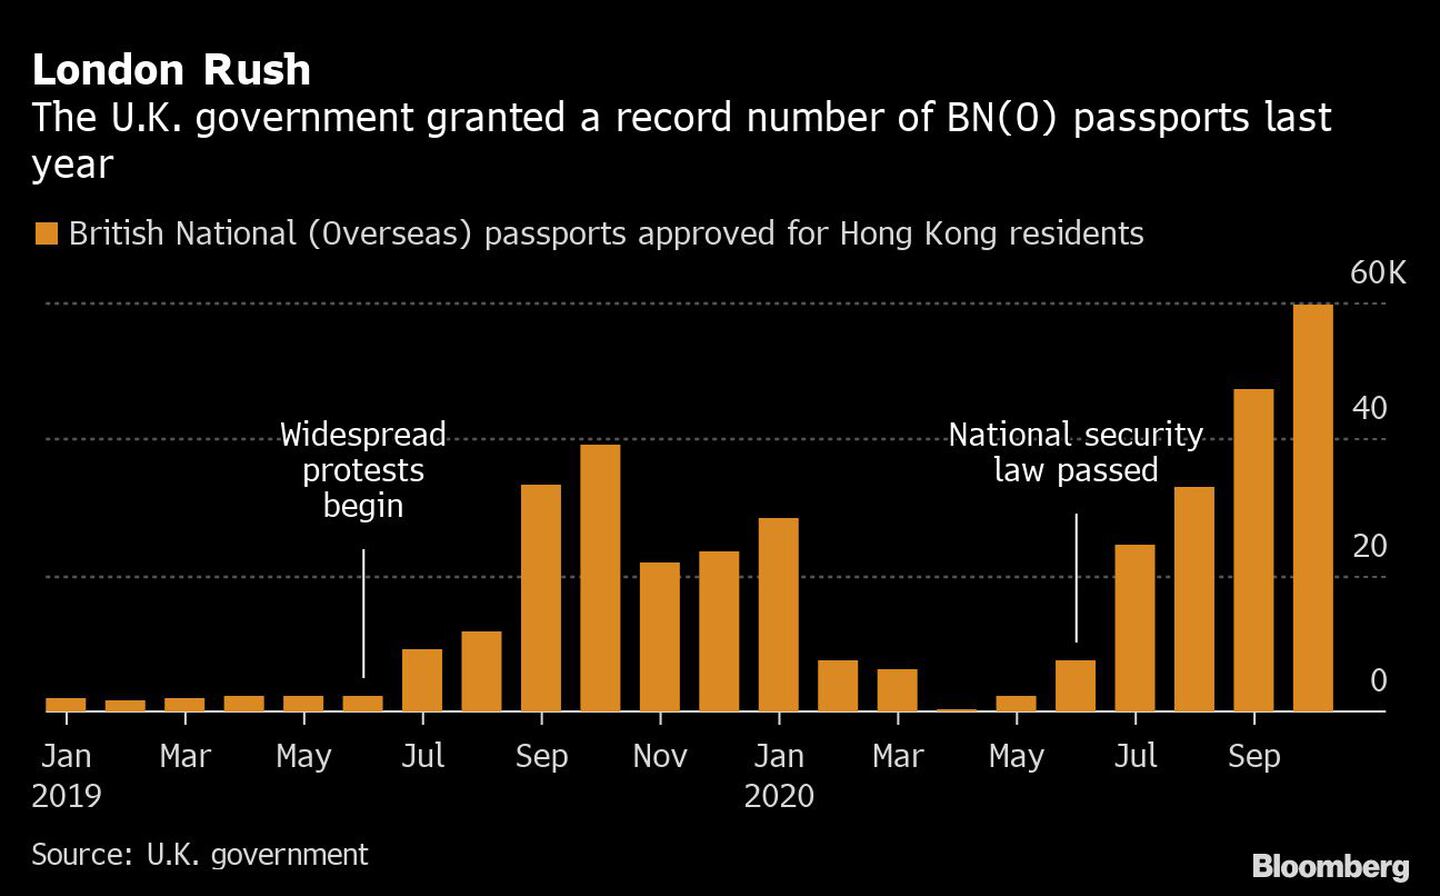 El gobierno británico concedió el año pasado un número récord de pasaportes BN (0)

Naranja: Pasaportes nacionales británicos (de ultramar) aprobados para residentes en Hong Kong 
dfd